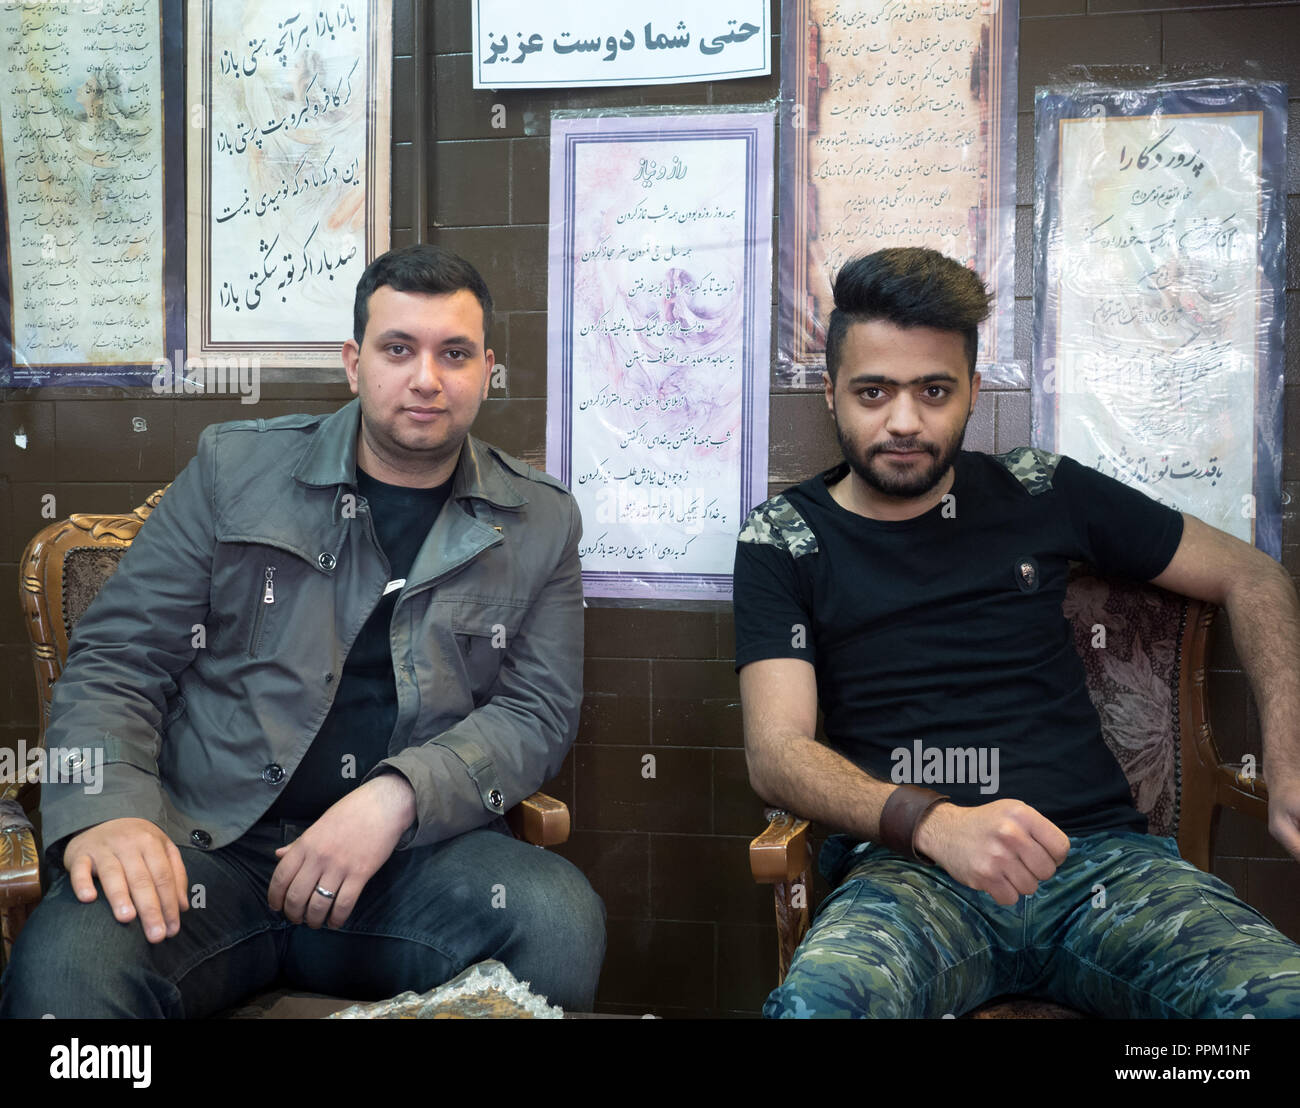 Meybod, Iran - März 6, 2017: Porträt von zwei Kerlen in einem lokalen Café Stockfoto